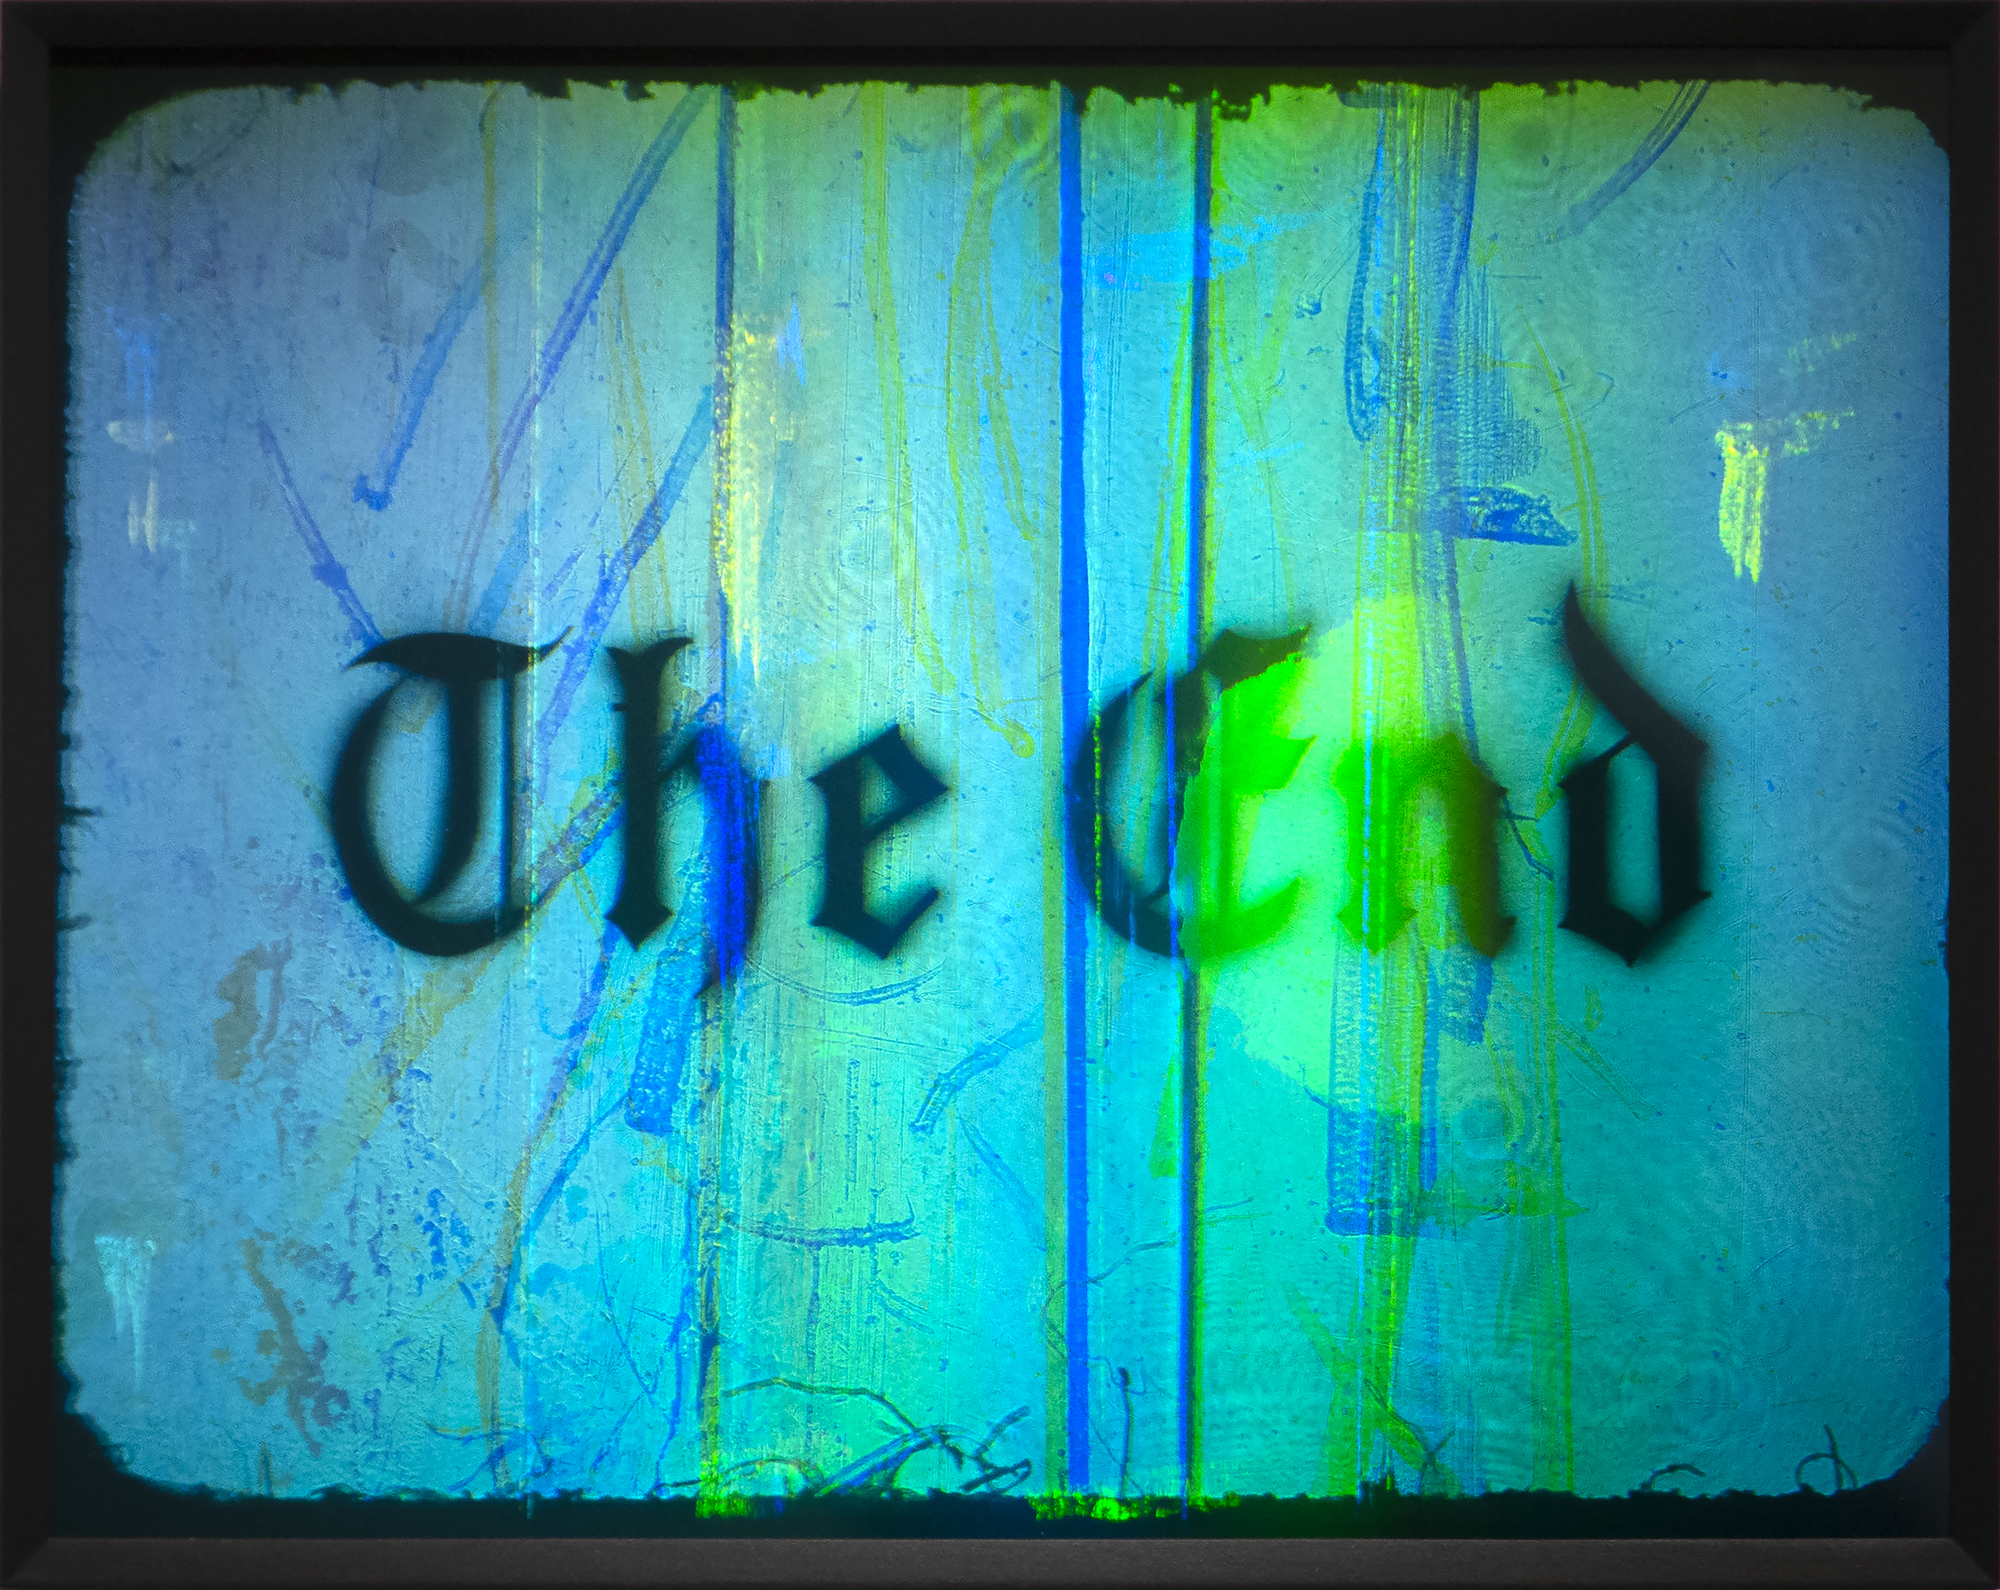 埃德·鲁沙是美国最杰出的艺术家之一，部分归功于他对美国符号以及语言与艺术之间关系的探索。《末日》是艺术家在20世纪90年代和2000年代使用的电影主题，出现在绘画、版画和绘画中，尤其是1991年现代艺术博物馆的大型绘画。在谈到时间的流逝和过时时，Ruscha 使用了过时的字体和在电影中使用文本的古老电影传统。短暂的概念被词本身、结束和媒介本身的本质所增强;在20世纪60年代开发时，全息图的激光技术被认为是未来派，随着图像的变化，图像也会产生一种无常的感觉。虽然变化中的文字和图像有先天运动，但这些全息图也代表一个句号——一个在时间上冻结的短暂时刻。